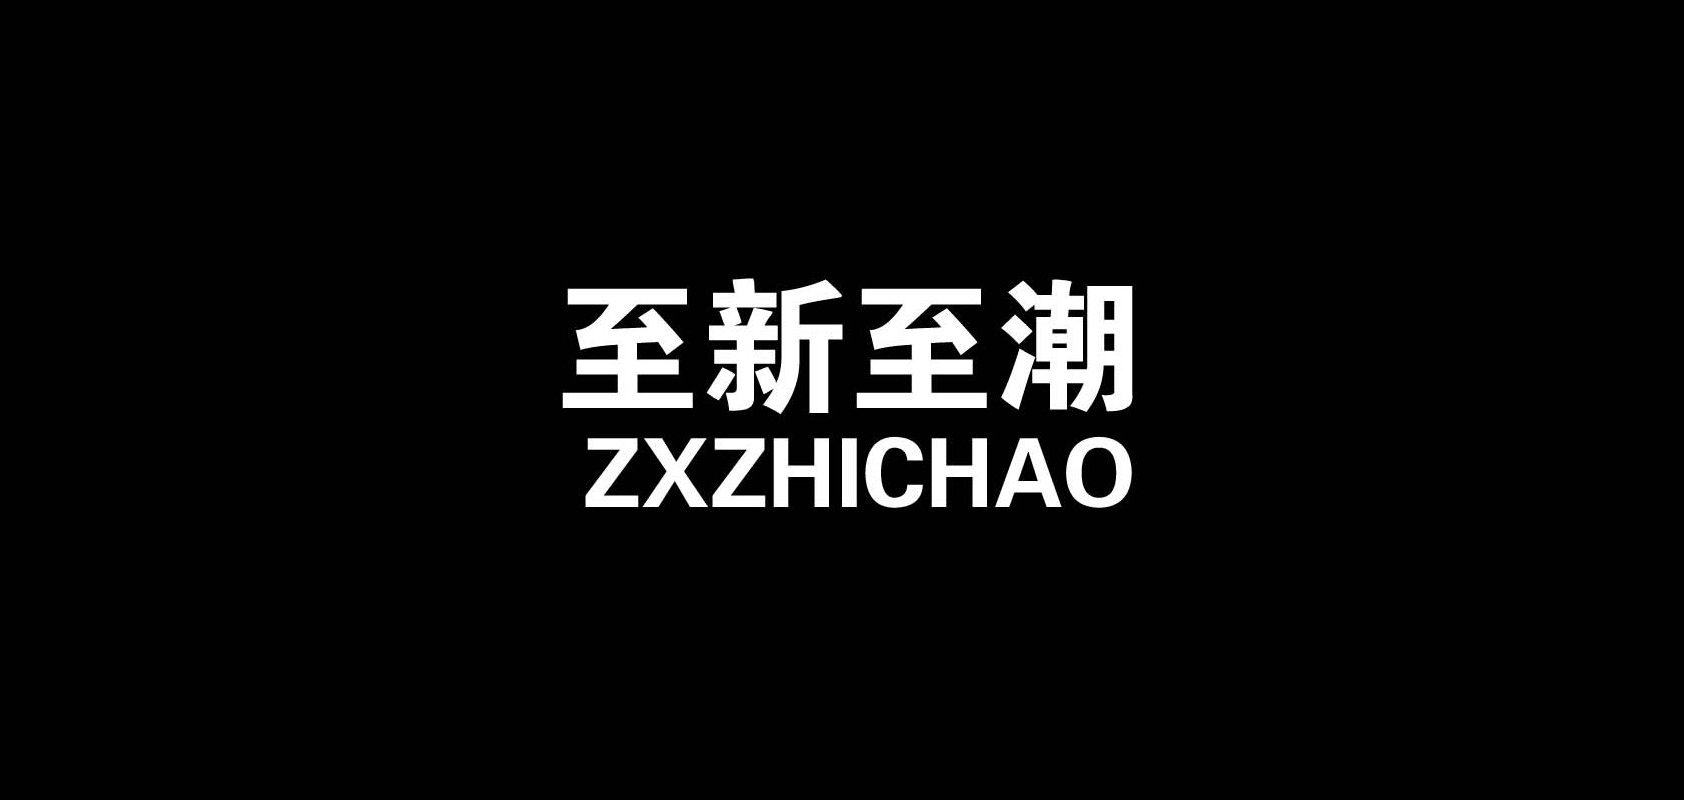 ZXZHICHAO/至新至潮品牌logo